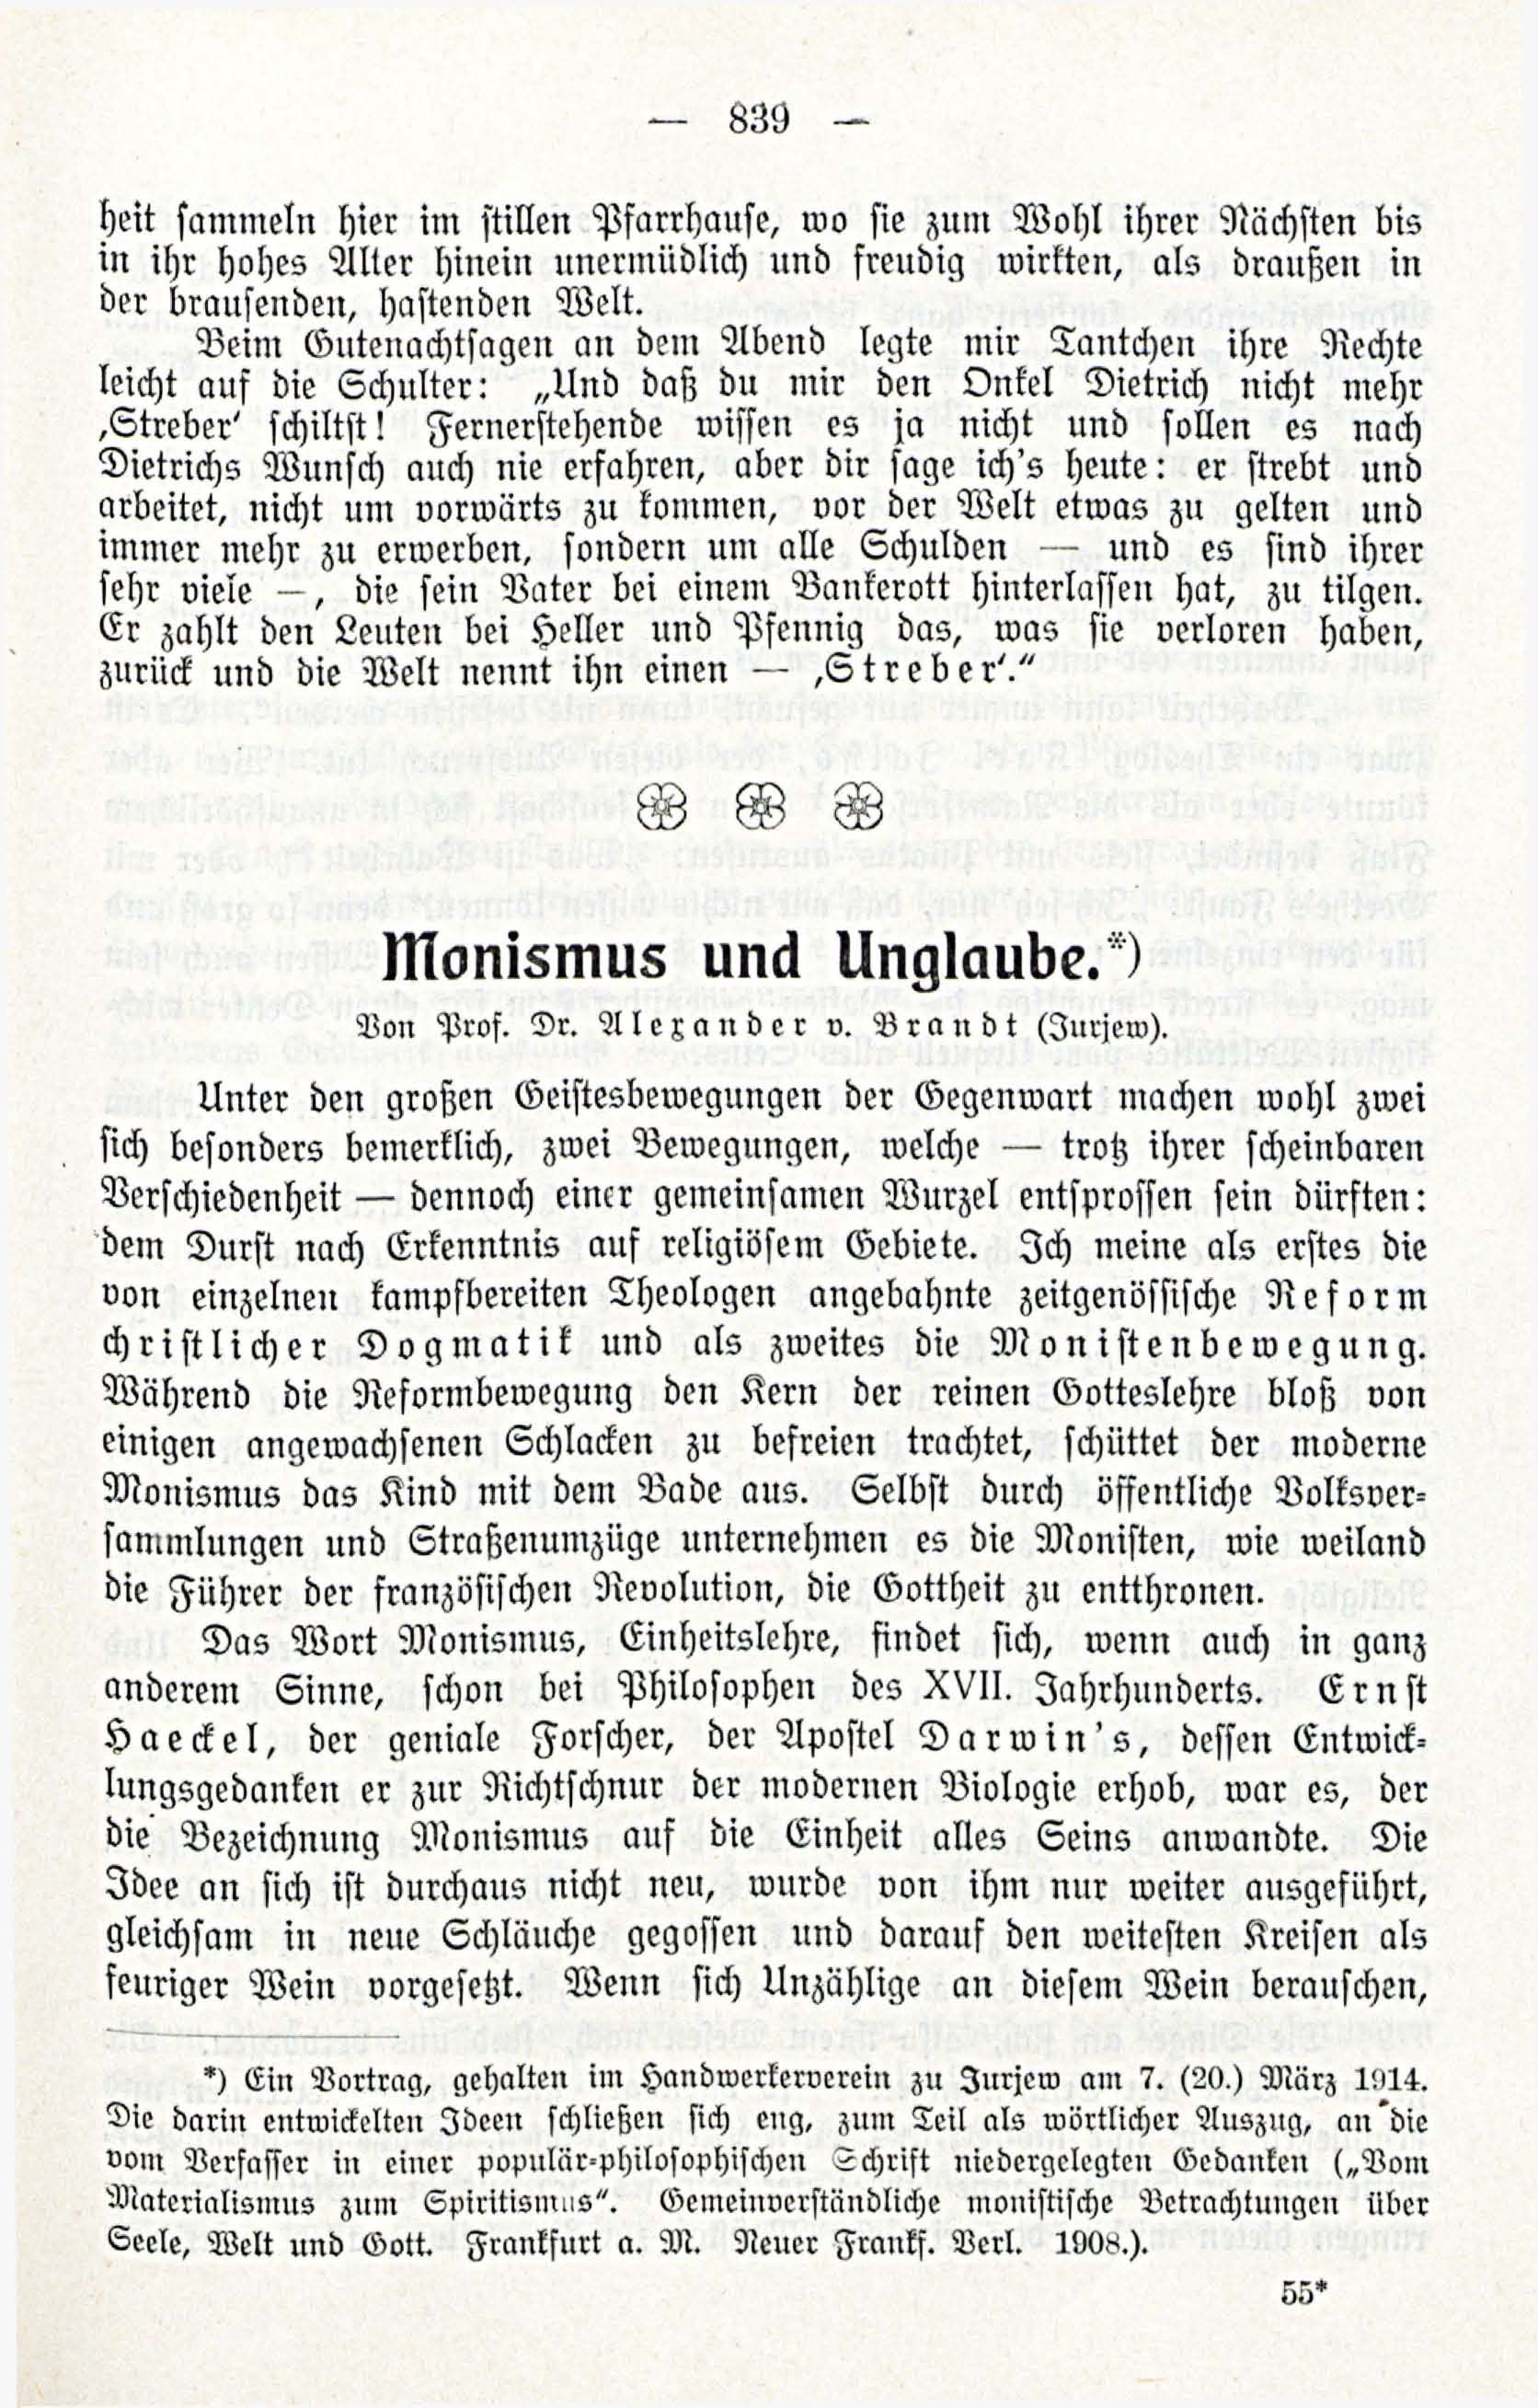 Deutsche Monatsschrift für Russland [3/12] (1914) | 55. (839) Main body of text